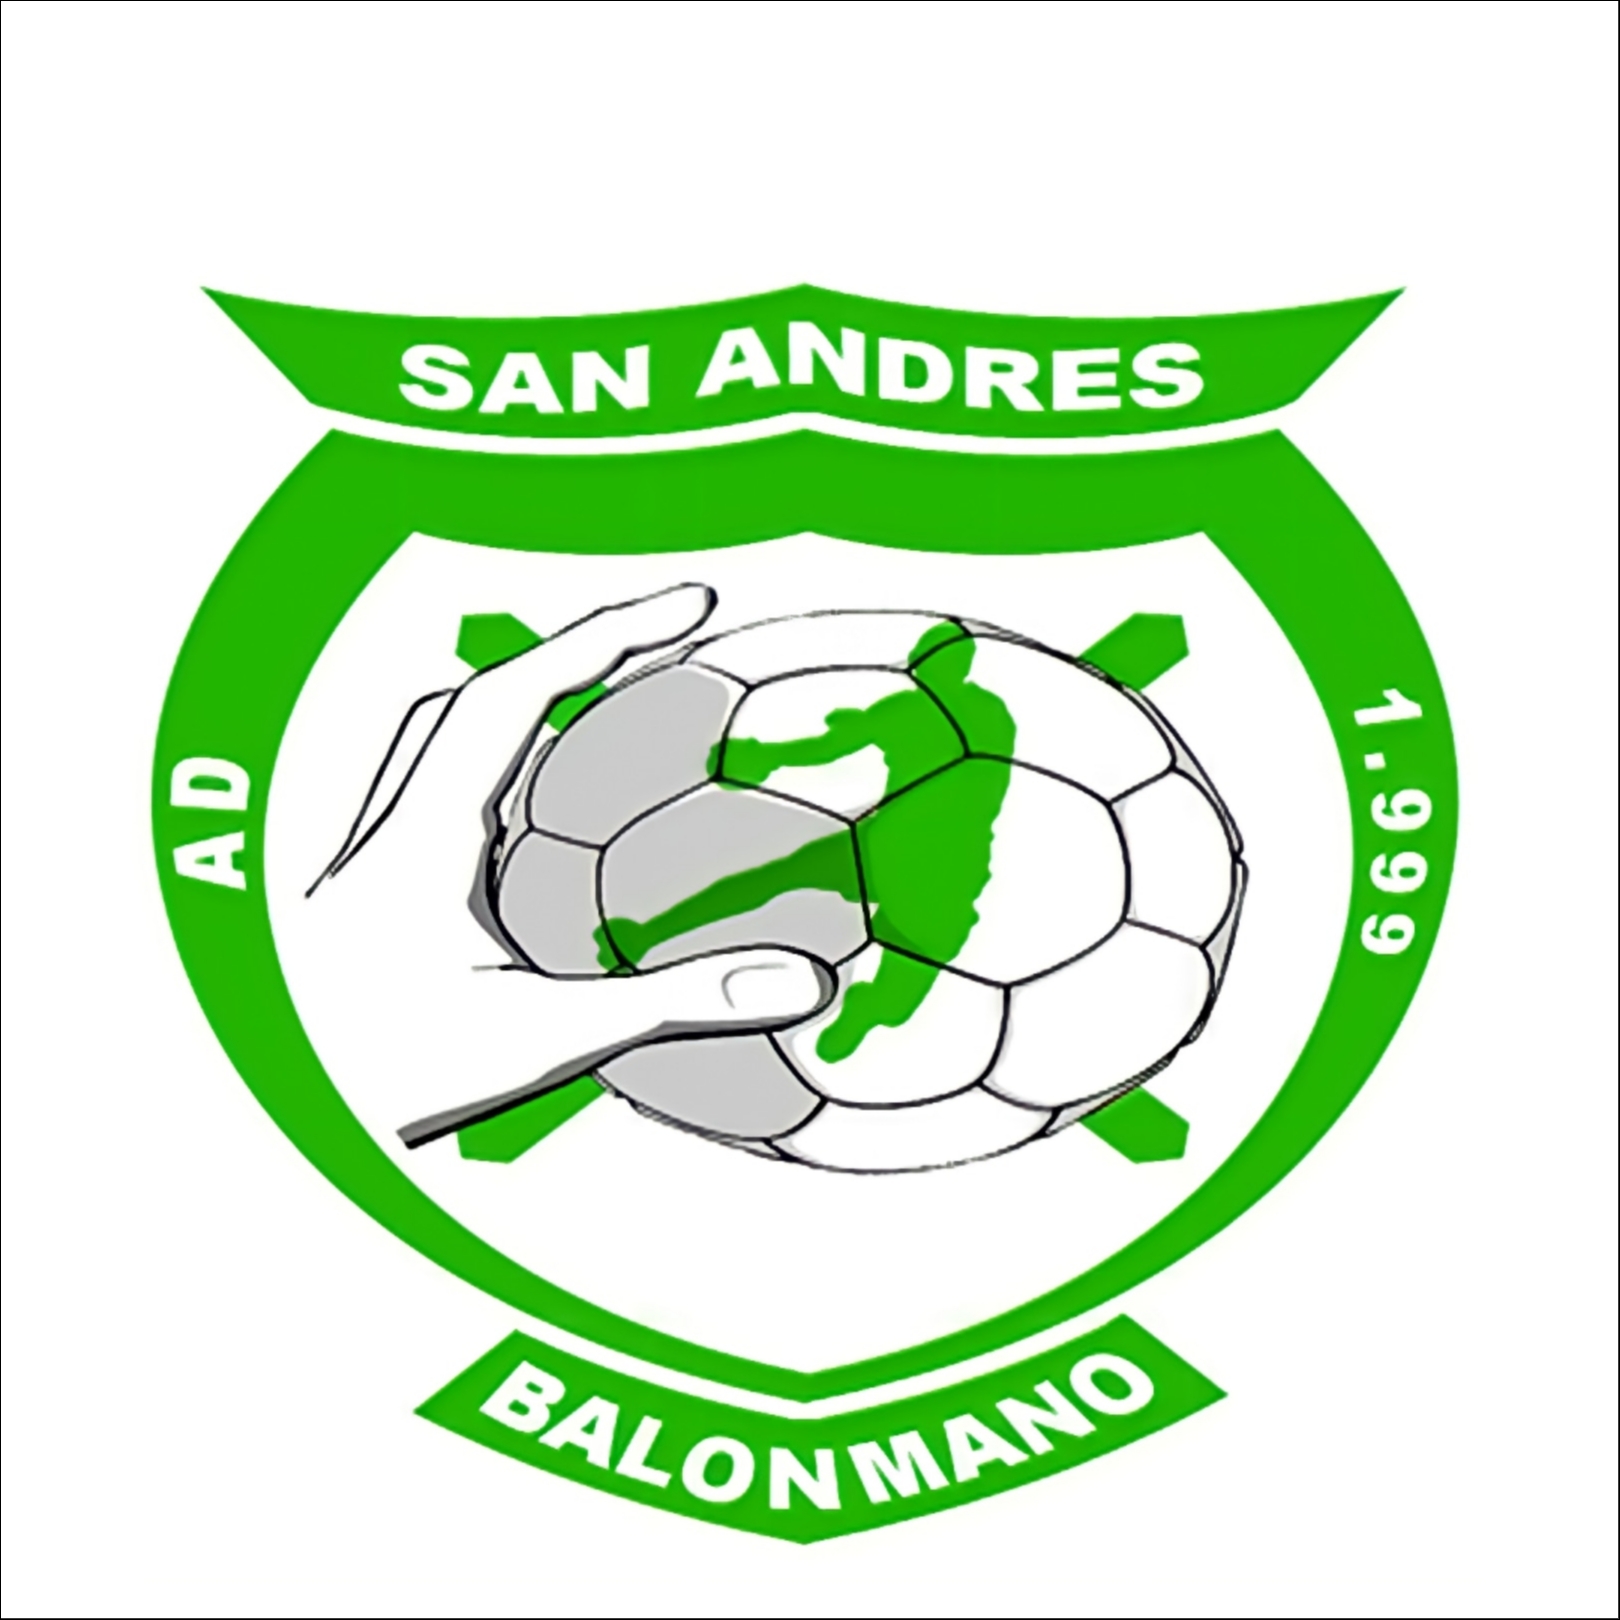 BALONMANO SAN ANDRES